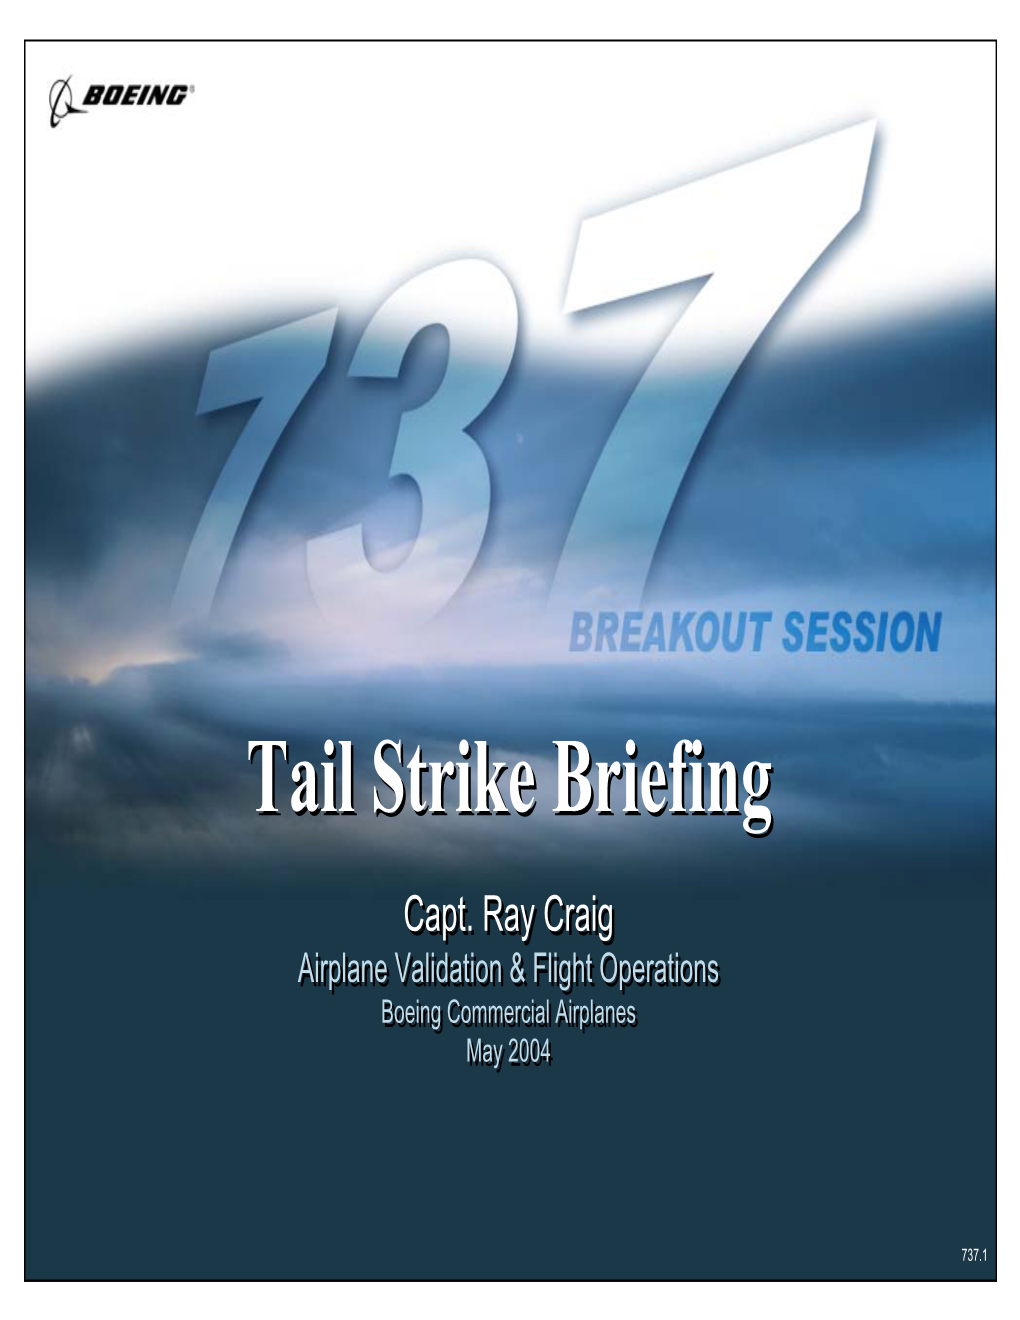 Tail Strike Briefing Presentation